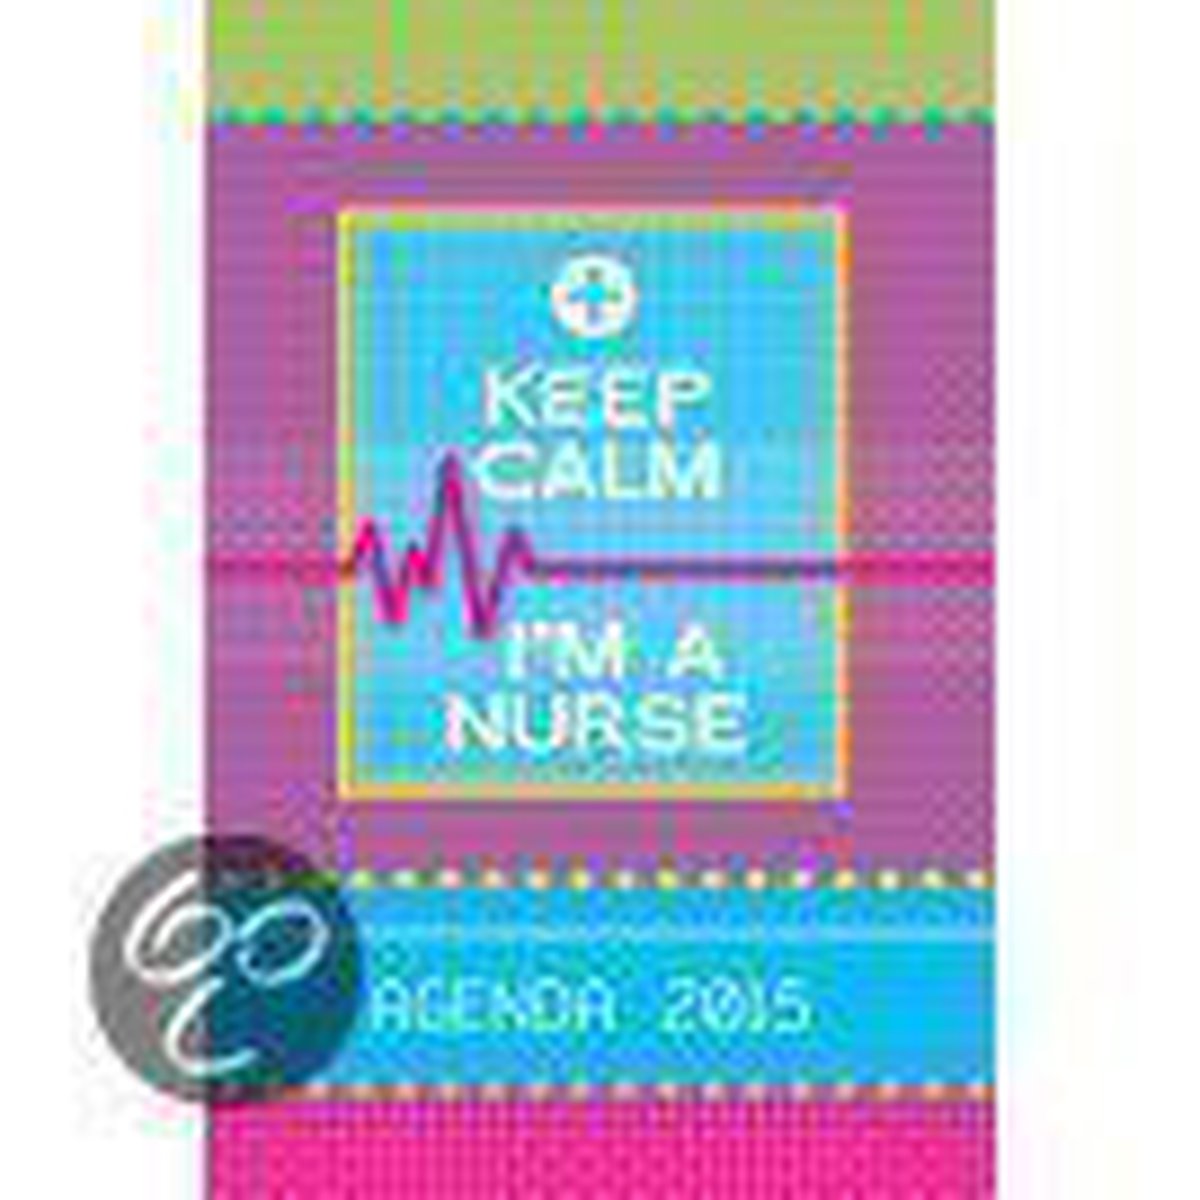 NursesDNA: Agenda voor Verpleegkundigen en Verzorgenden. Calm a Nurse.. | bol.com